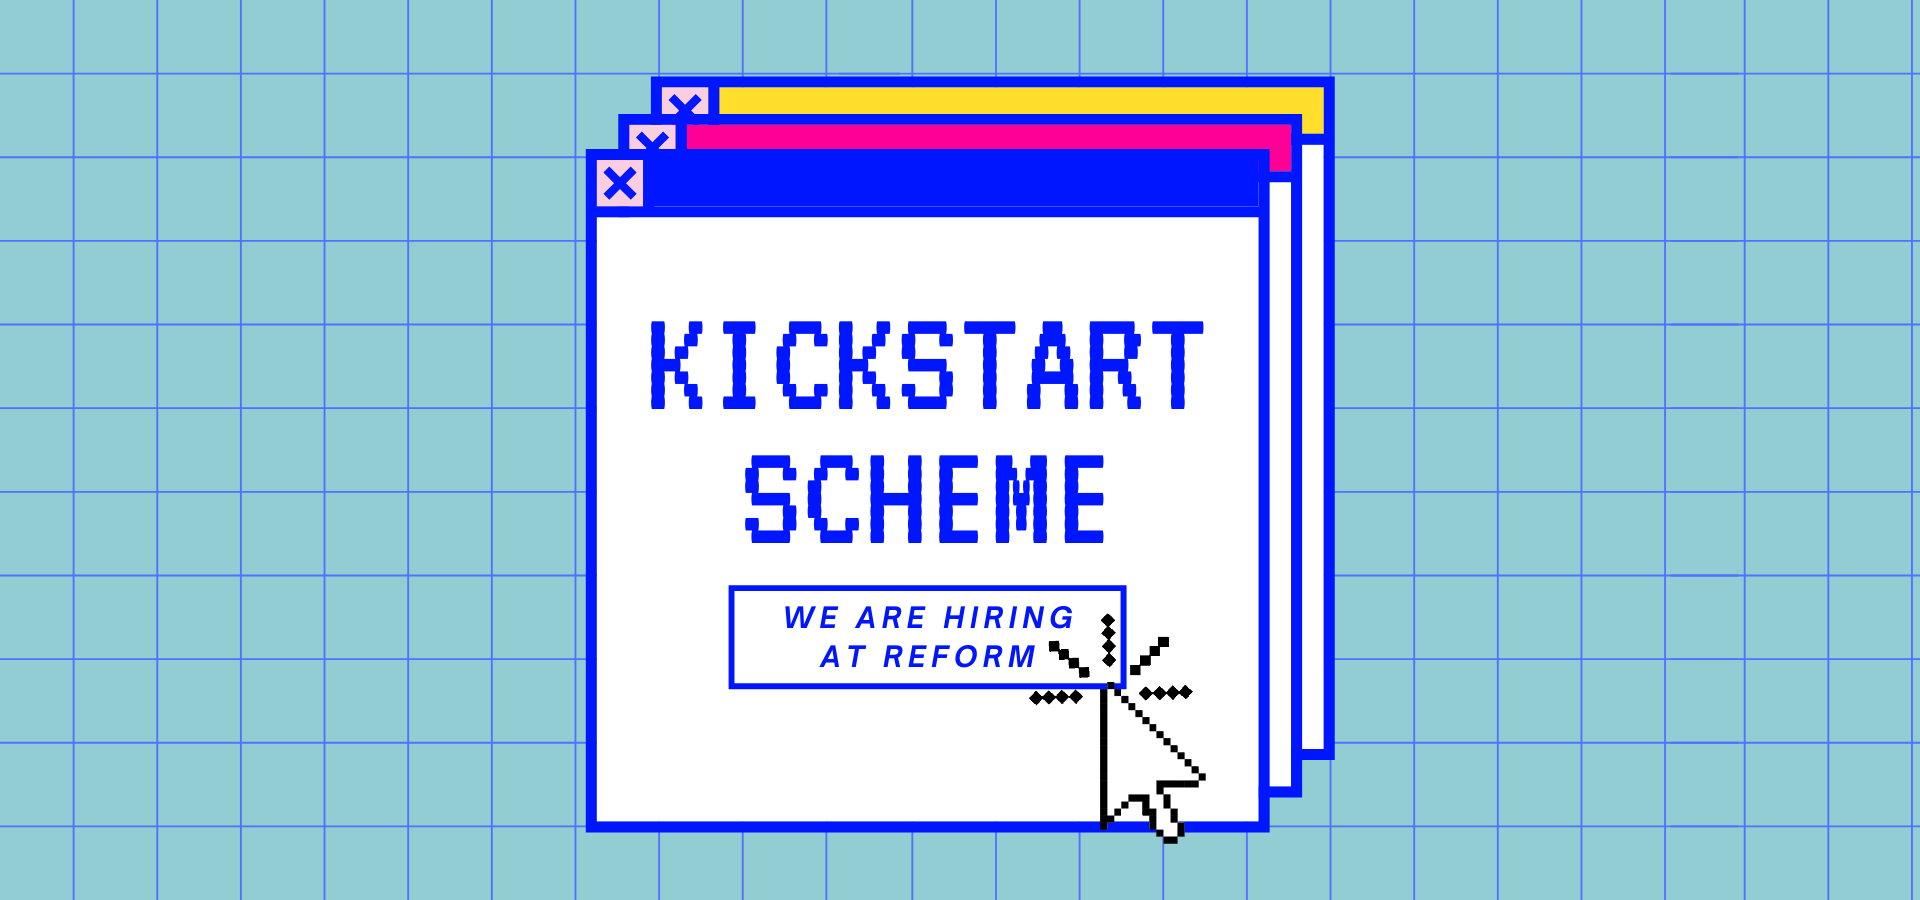 Kickstart Scheme (featured image)